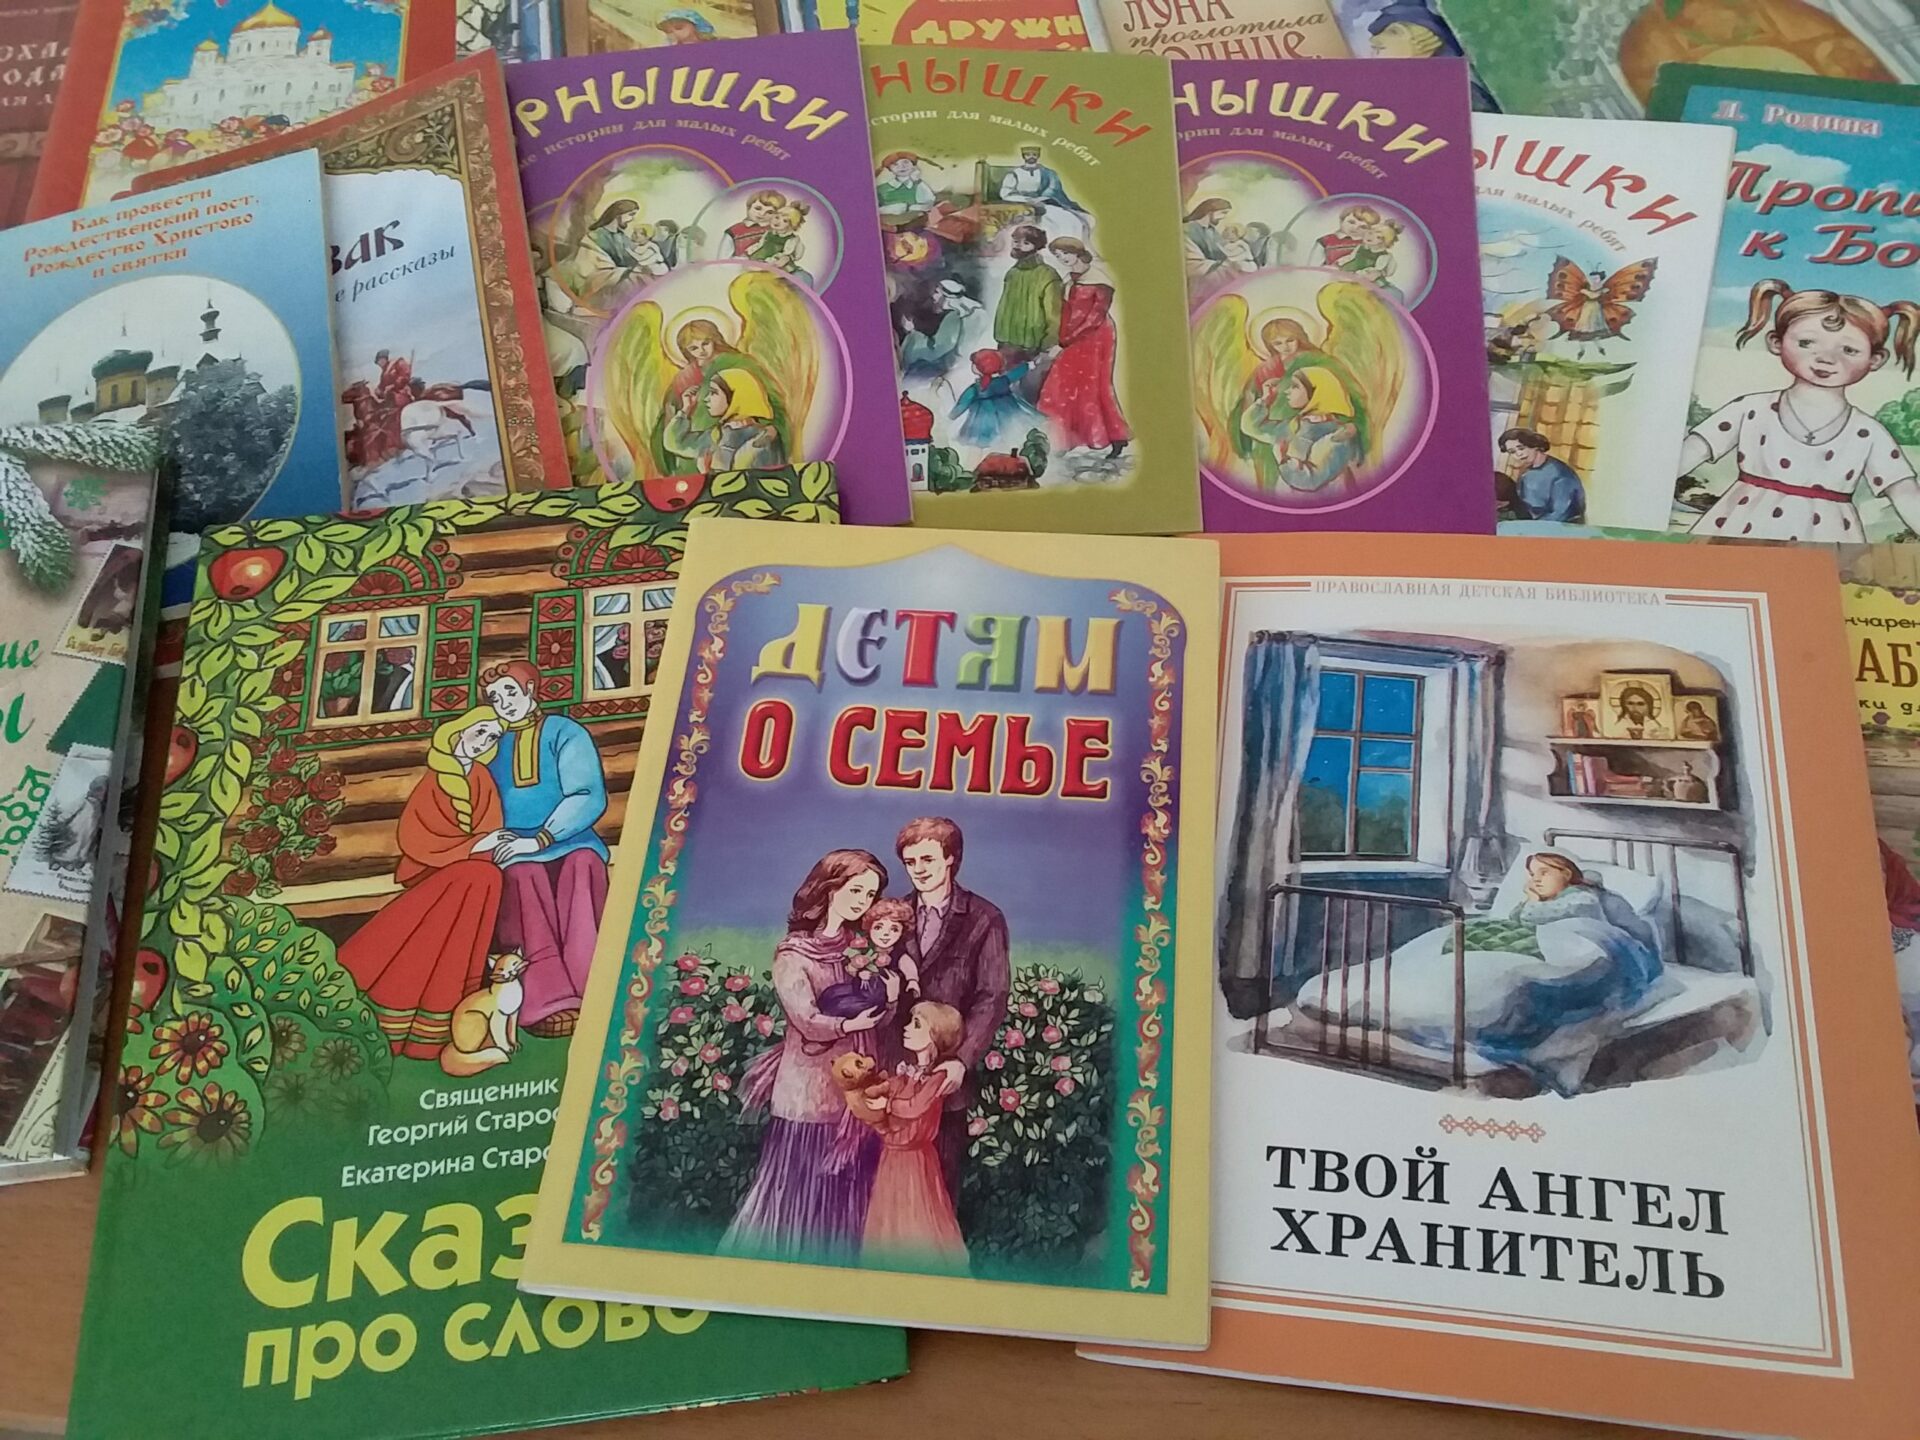 День православной книги сценарий для детей